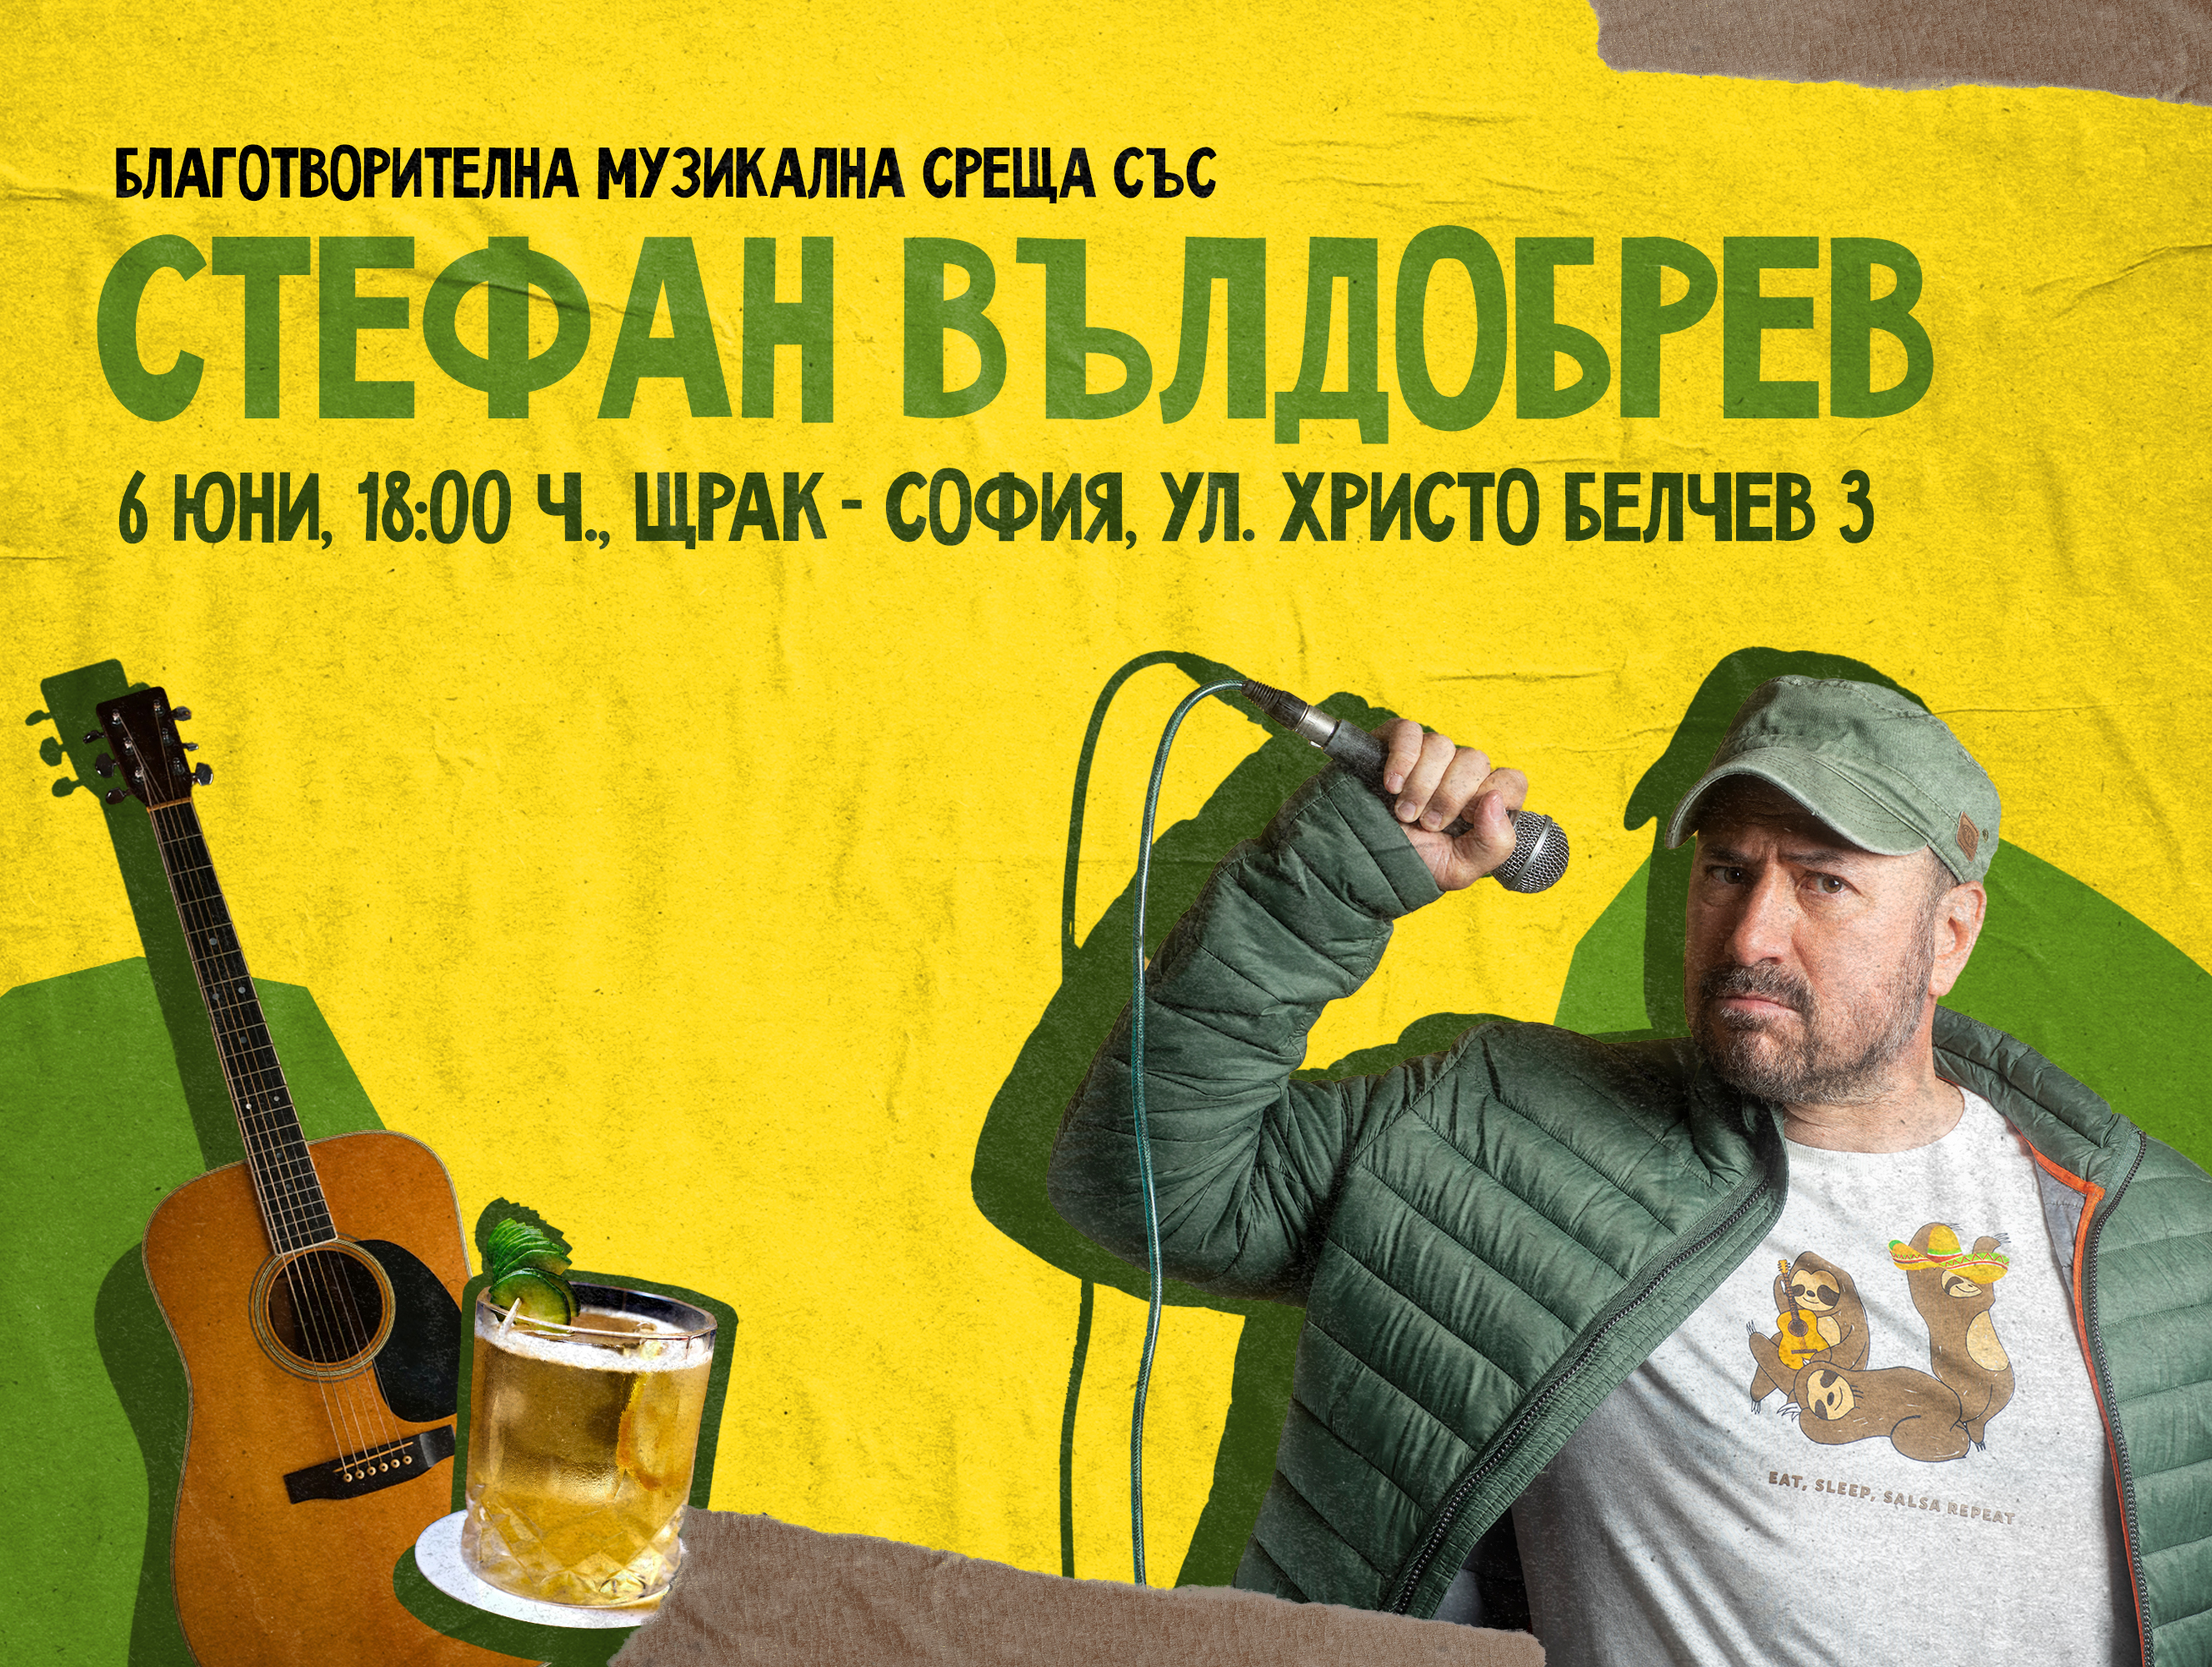 Благотворителна музикална среща със Стефан Вълдобрев